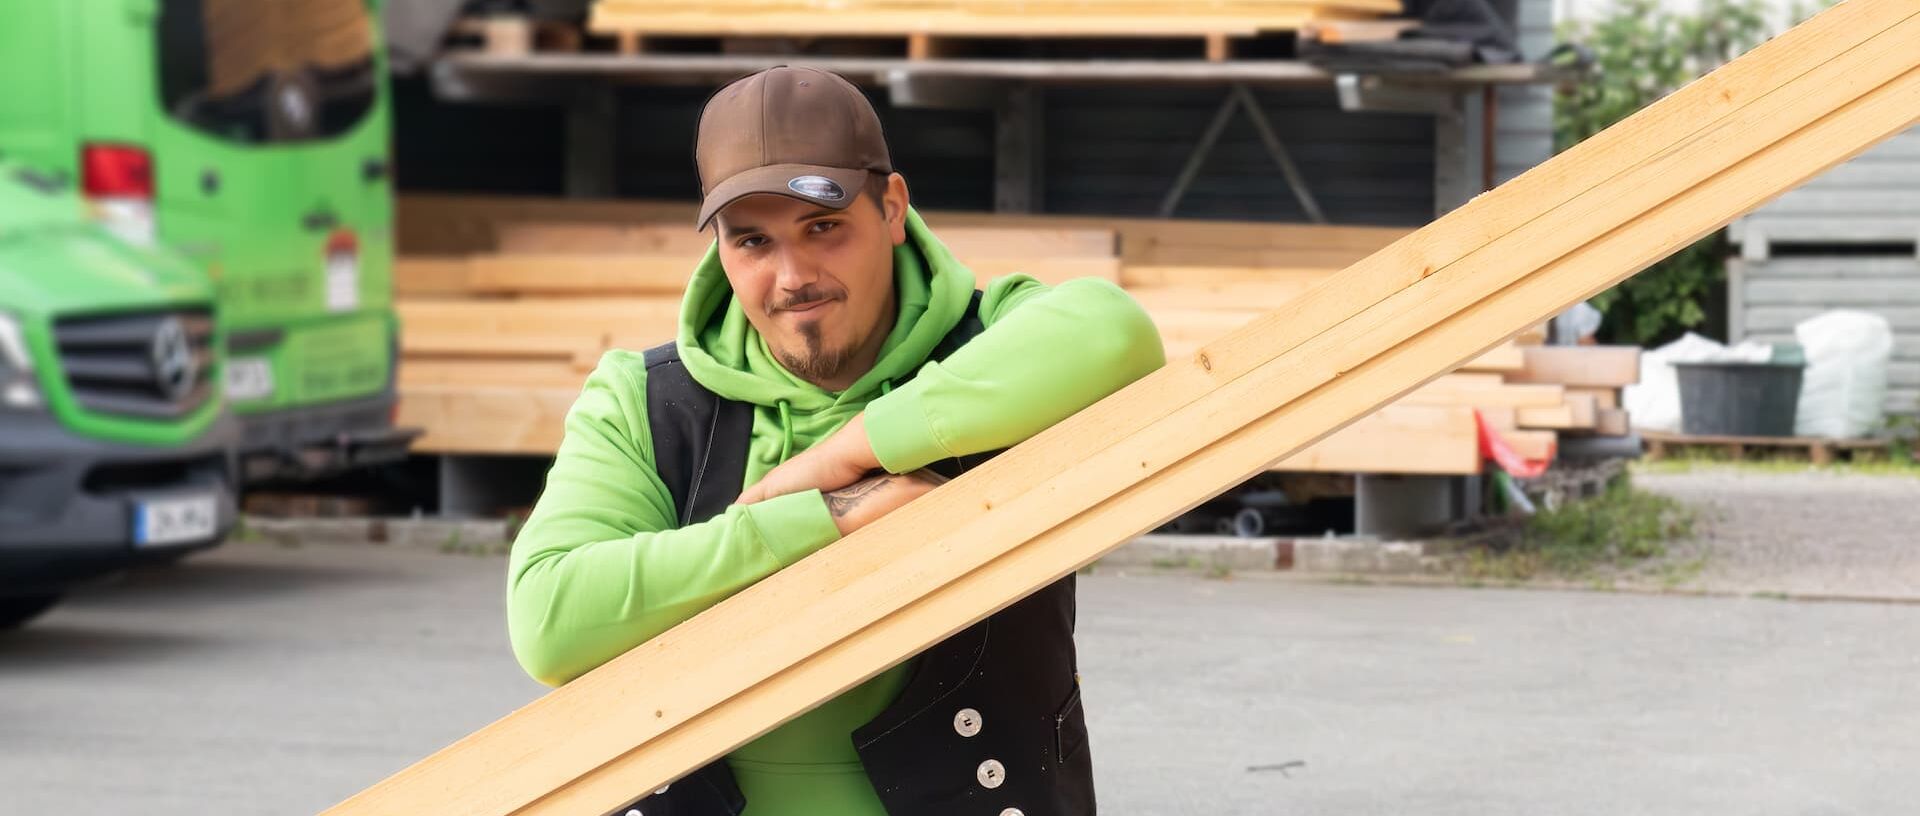 Porträtfoto Christopher - Er steht auf dem Firmengelände und stützt seine Arme auf mehreren Holzlatten ab, die schräg an einer Wand gestellt sind.